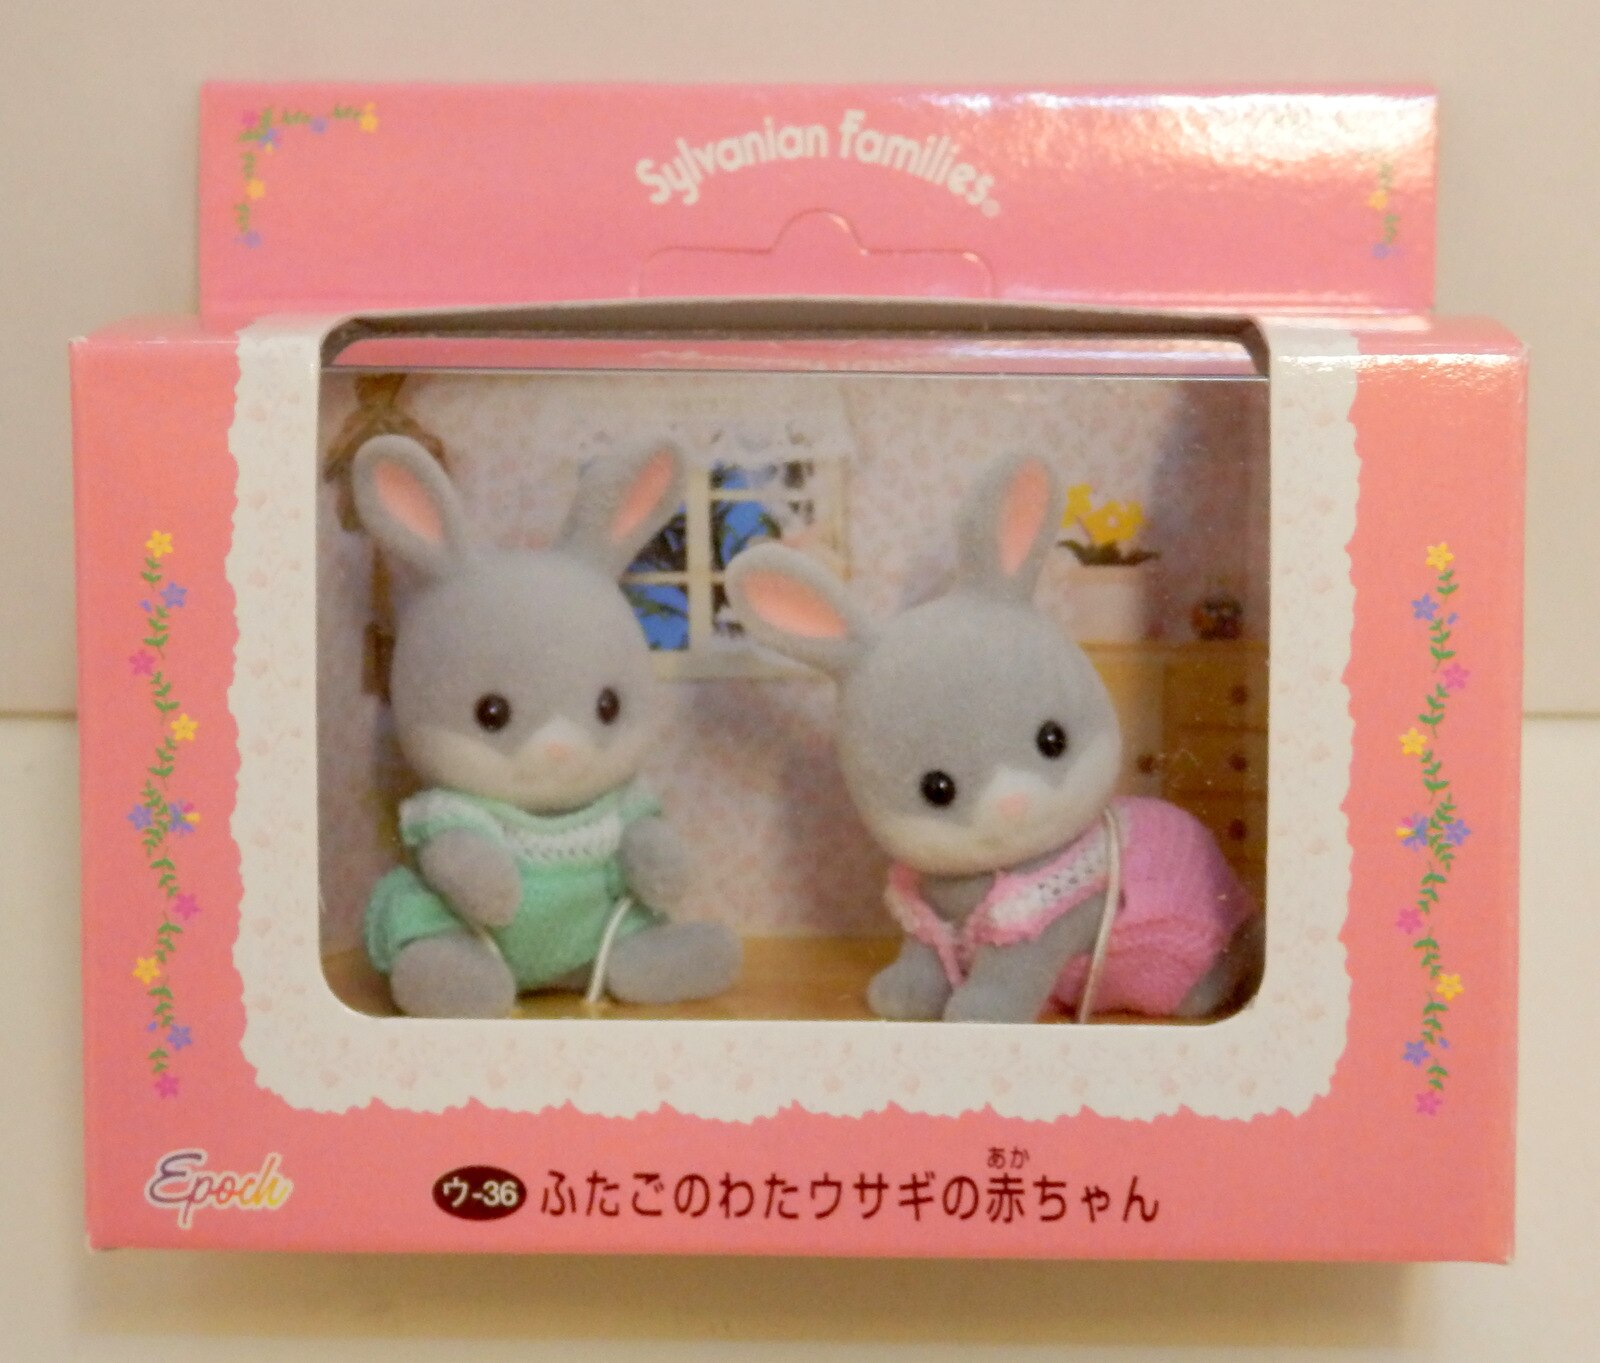 エポック社 シルバニアファミリー ピンク×花柄箱 ウ-36 ふたごのわたウサギの赤ちゃん(グレー) まんだらけ Mandarake